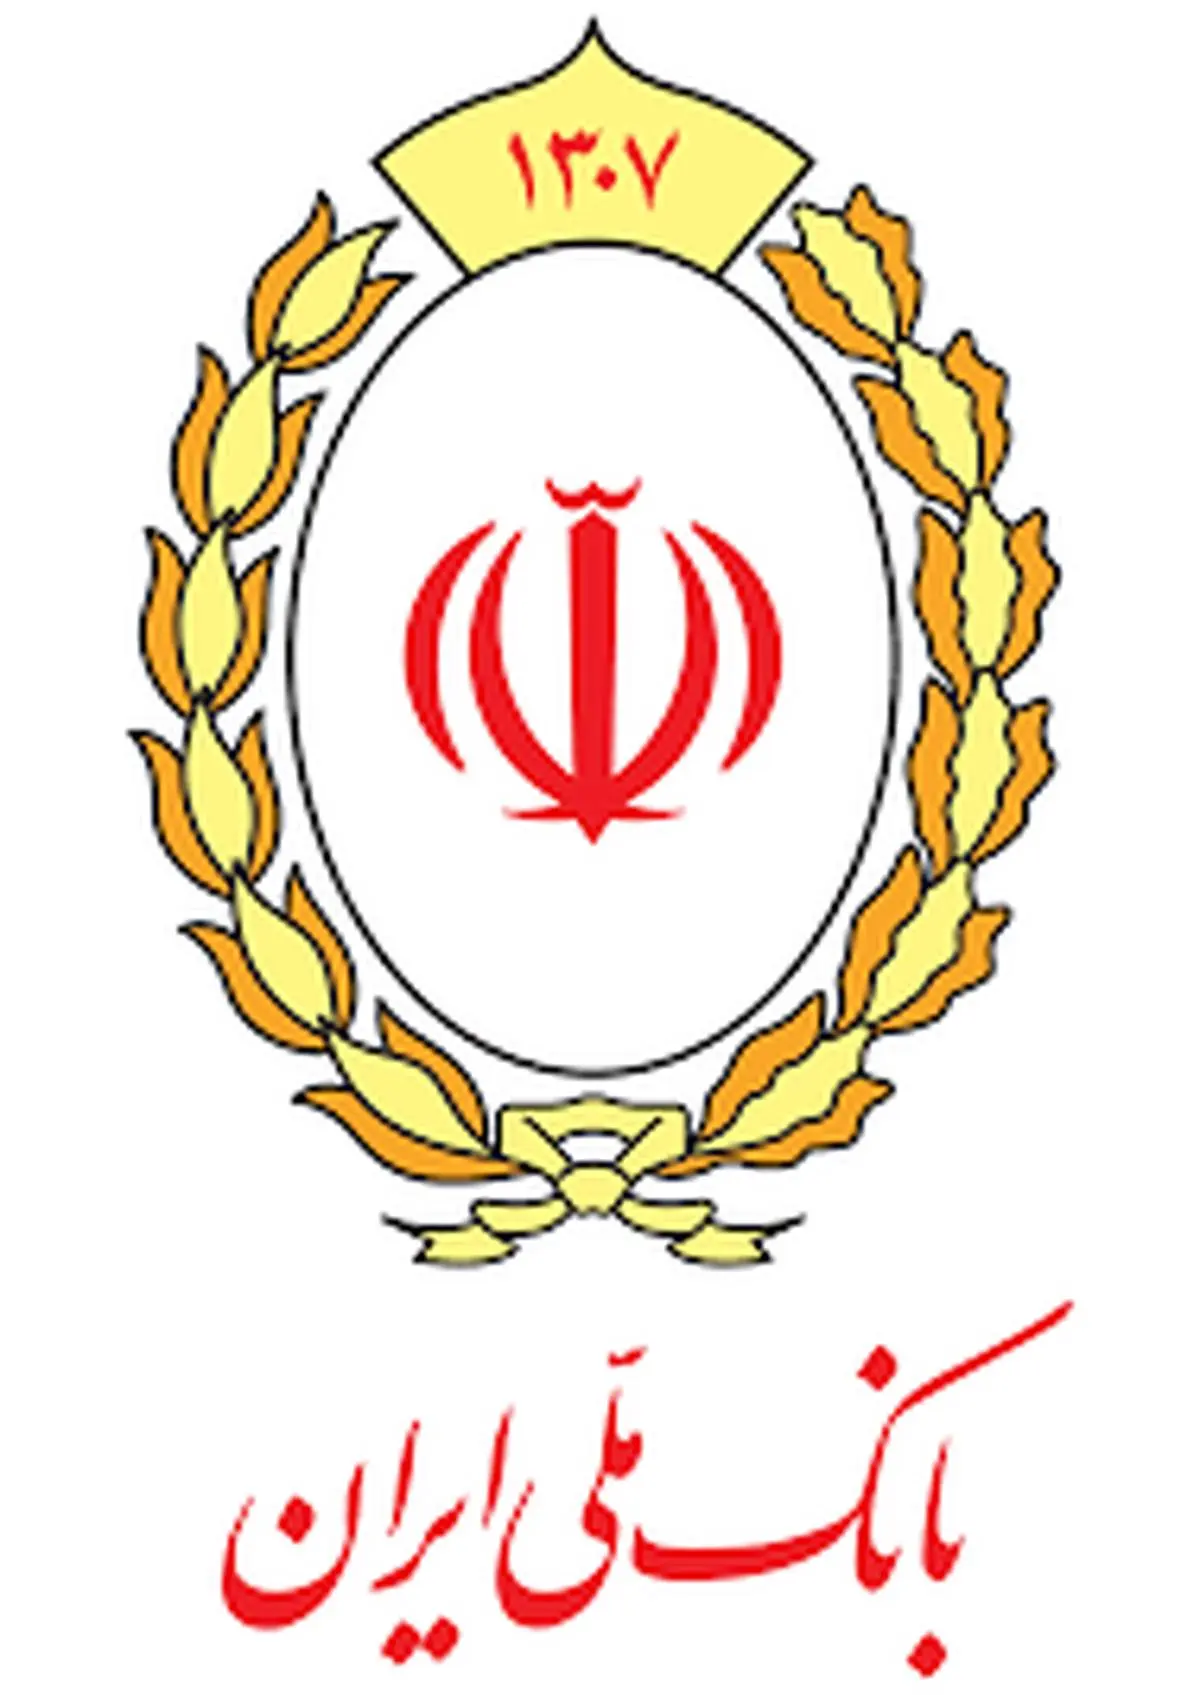 بانک ملی ایران میزبان مسئولان امور ایثارگران در دستگاه های اجرایی
